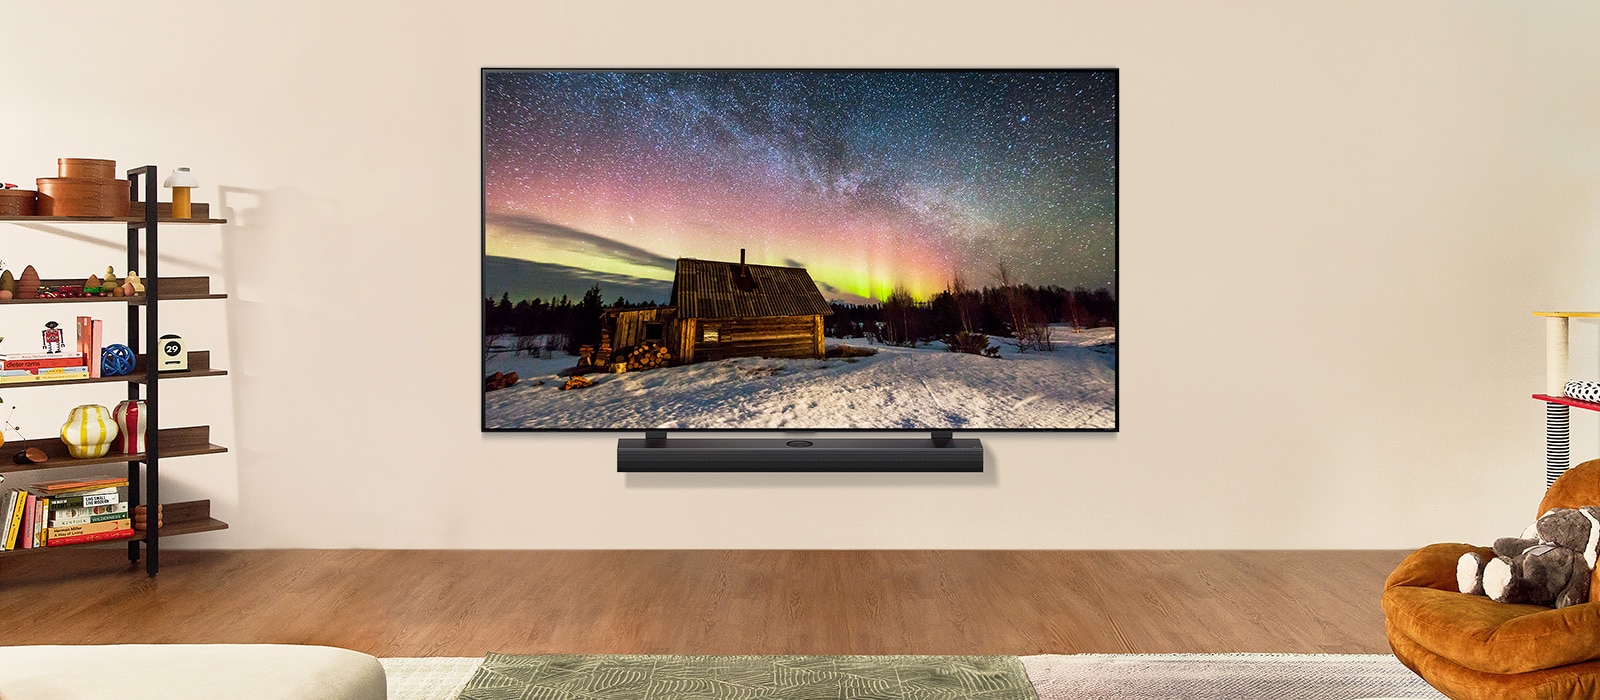 Un TV LG e una soundbar in uno spazio abitativo moderno durante il giorno. L'immagine sullo schermo dell'aurora boreale viene visualizzata con i livelli di luminosità ideali.